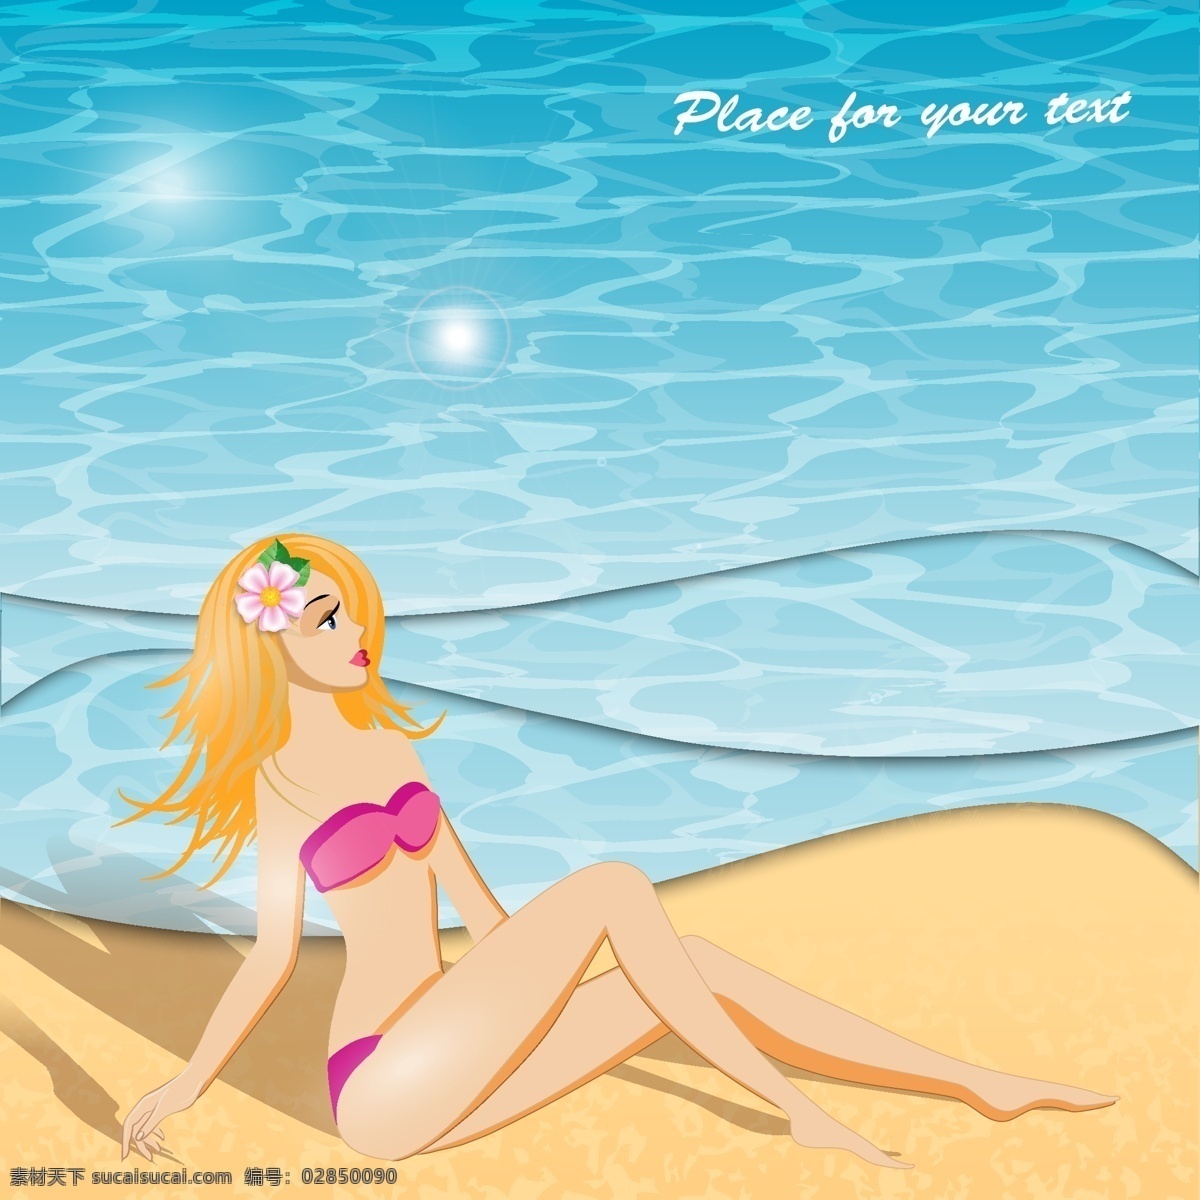 沙滩 女孩 夏日 度假 椰树 矢量 沙子 海水 复古 创意 涂鸦 英文 小清新 卡通 填充 插画 背景 海报 广告 包装 印刷